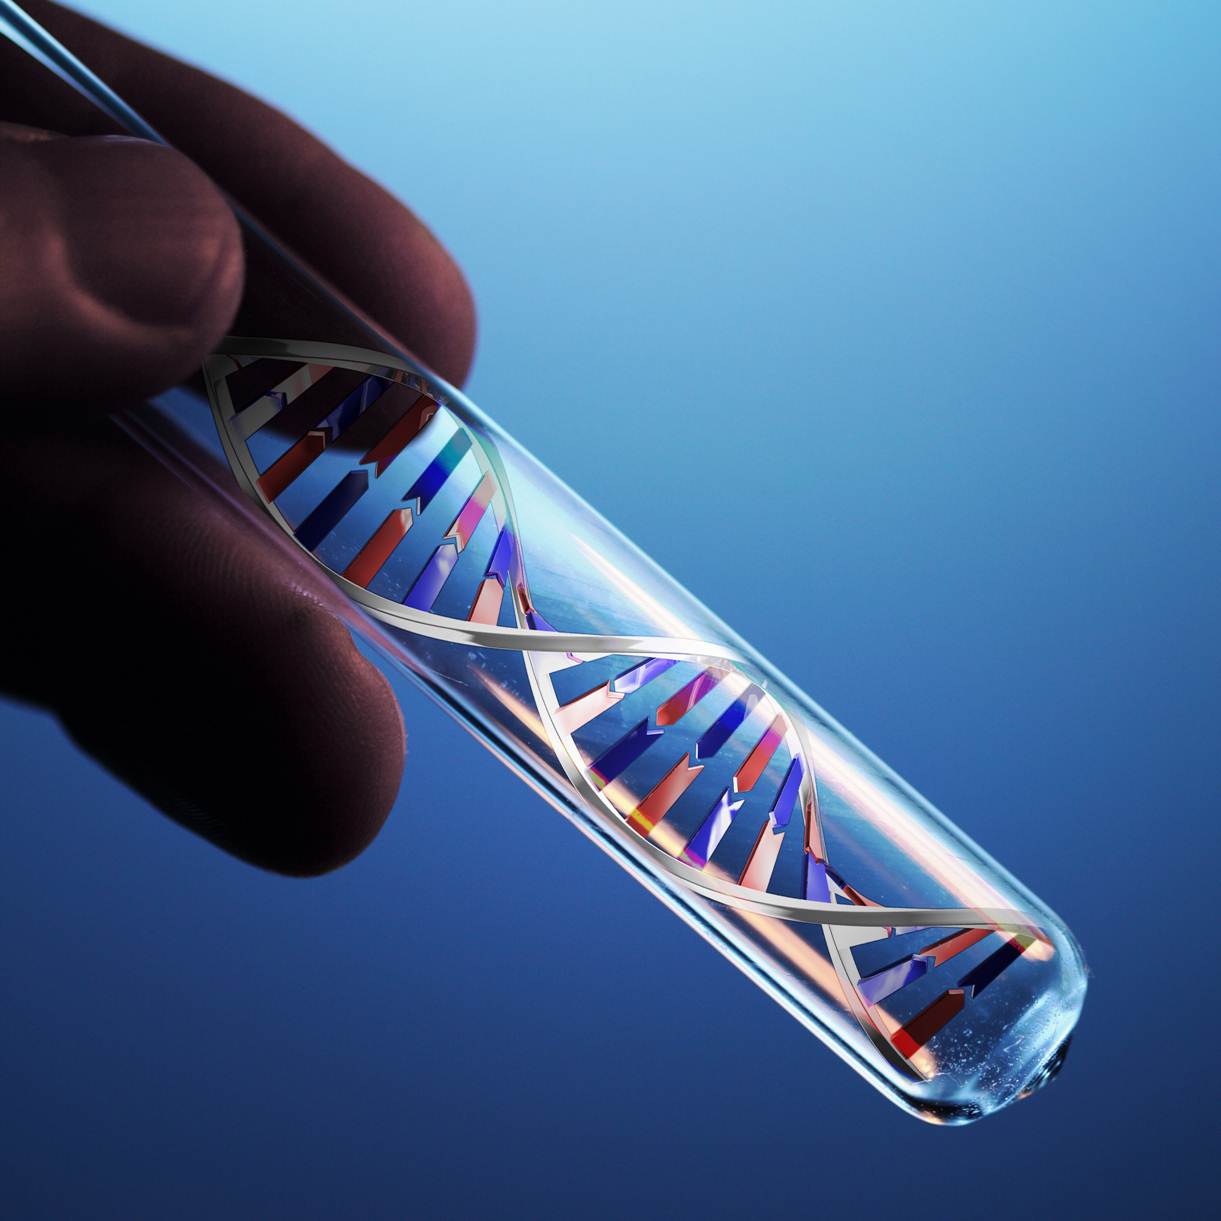   ДНК-диагностика методом ПЦРна ИППП у мужчин